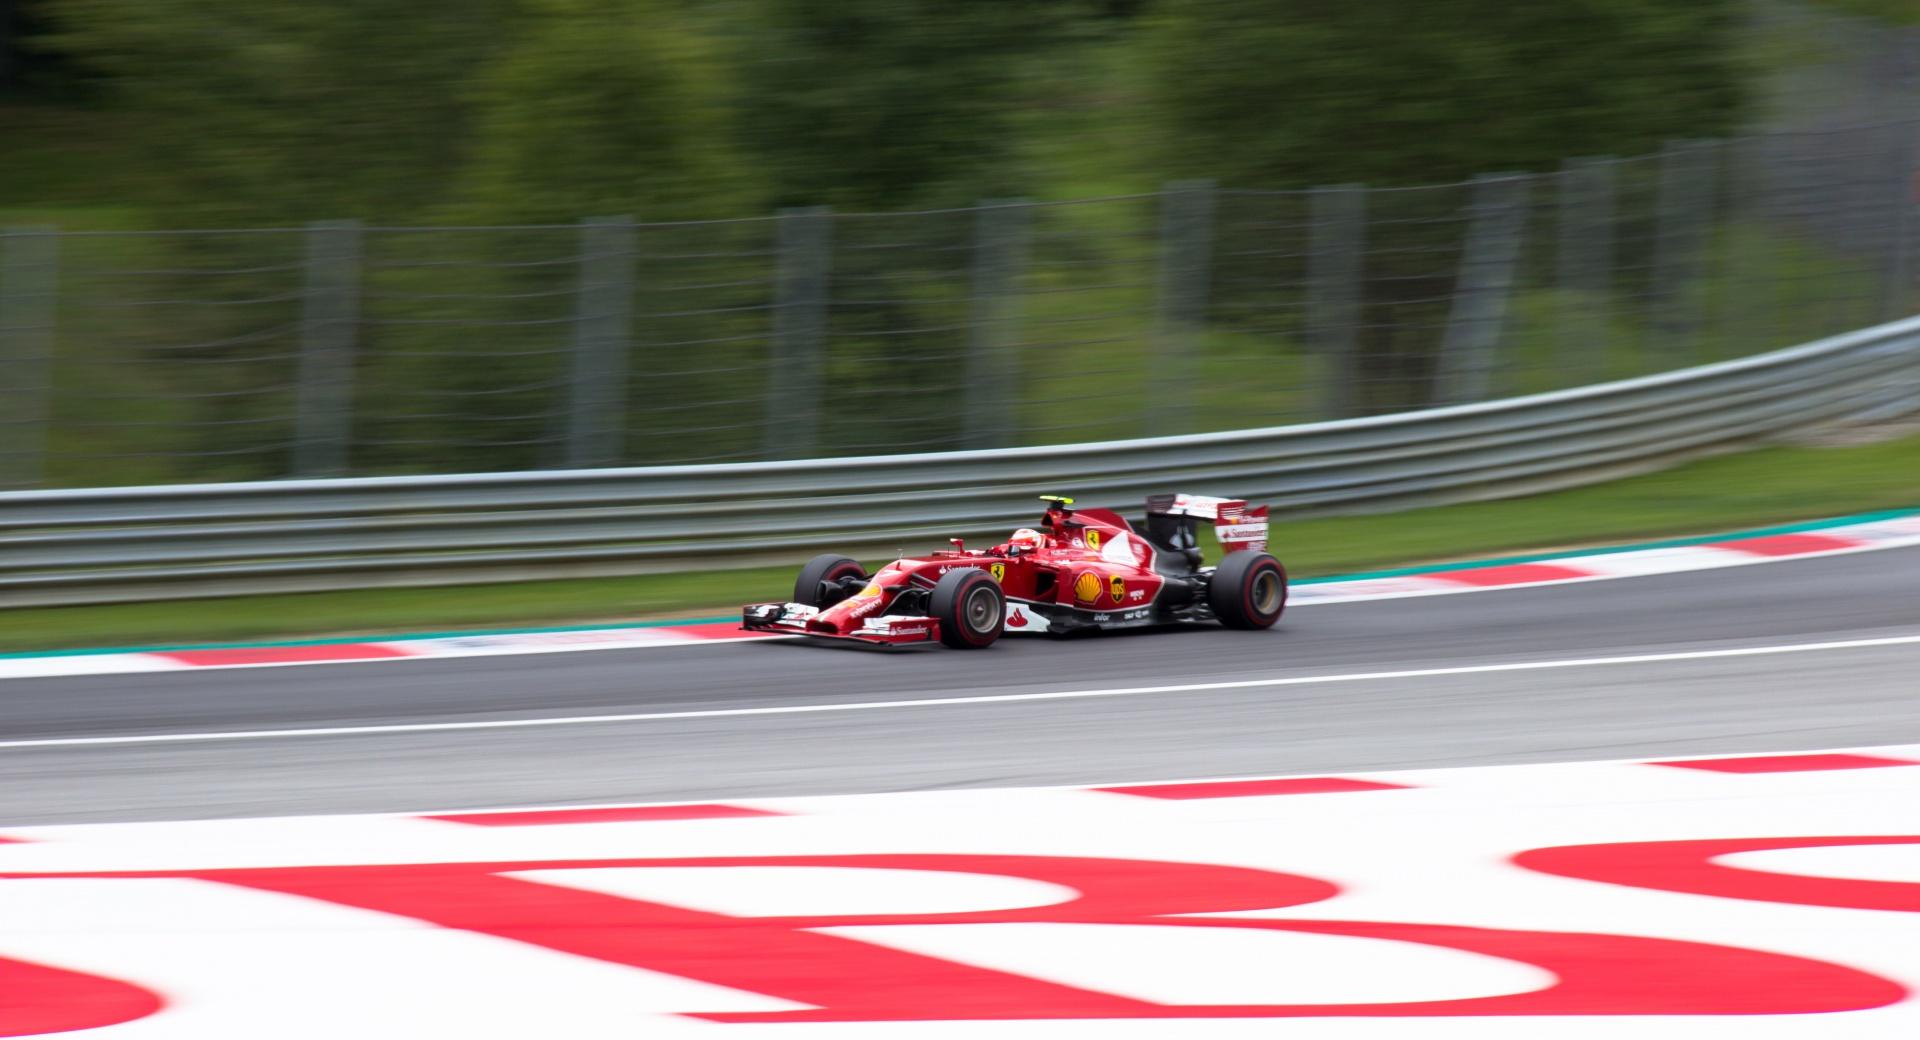 Grand Prix Austria - Red Bull - F1 - 2014 at 2048 x 2048 iPad size wallpapers HD quality